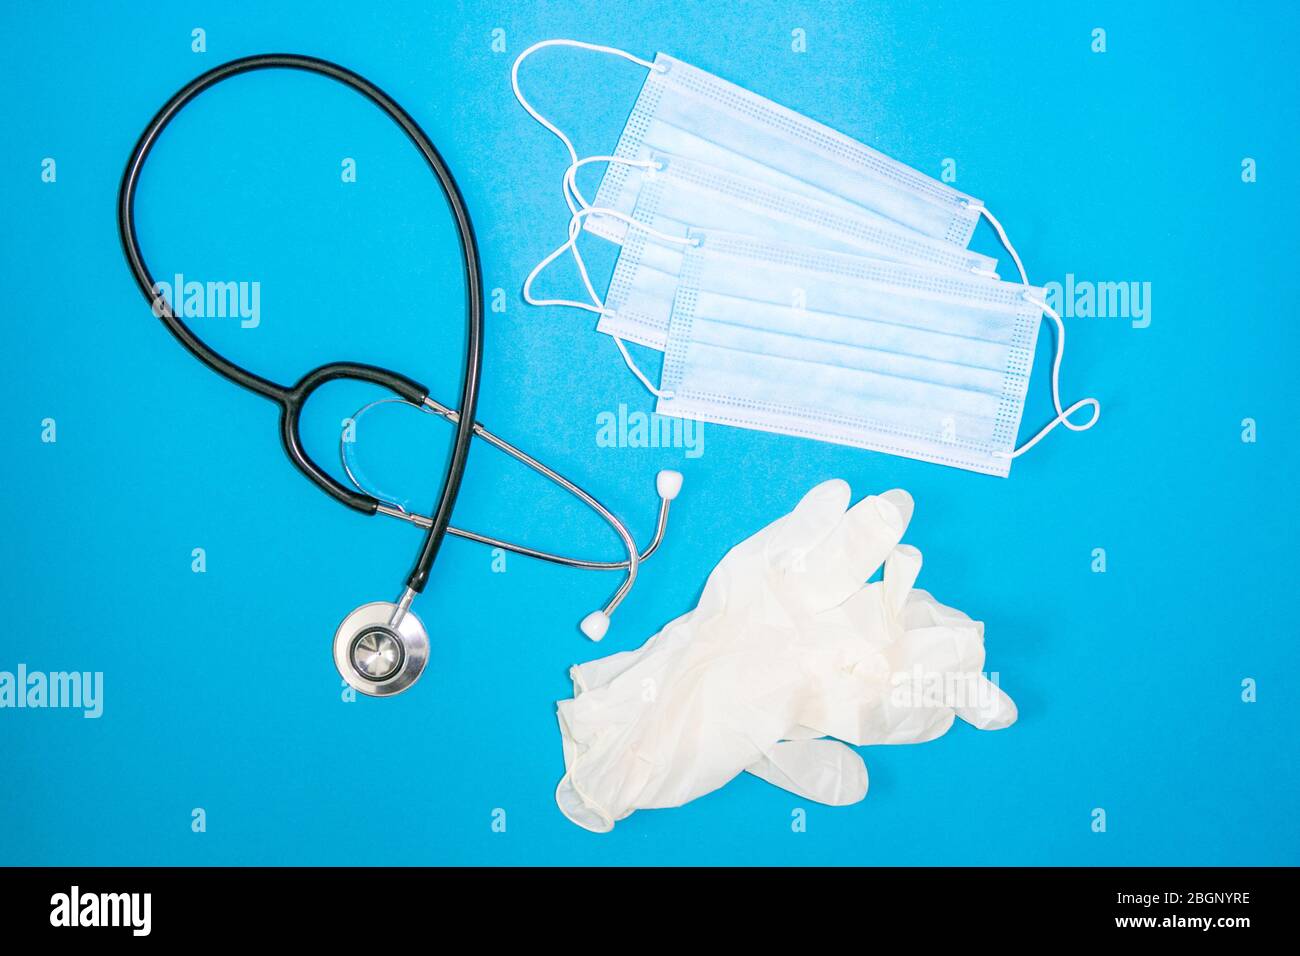 primo piano di stetoscopio, maschera facciale e guanto chirurgico su sfondo blu Foto Stock